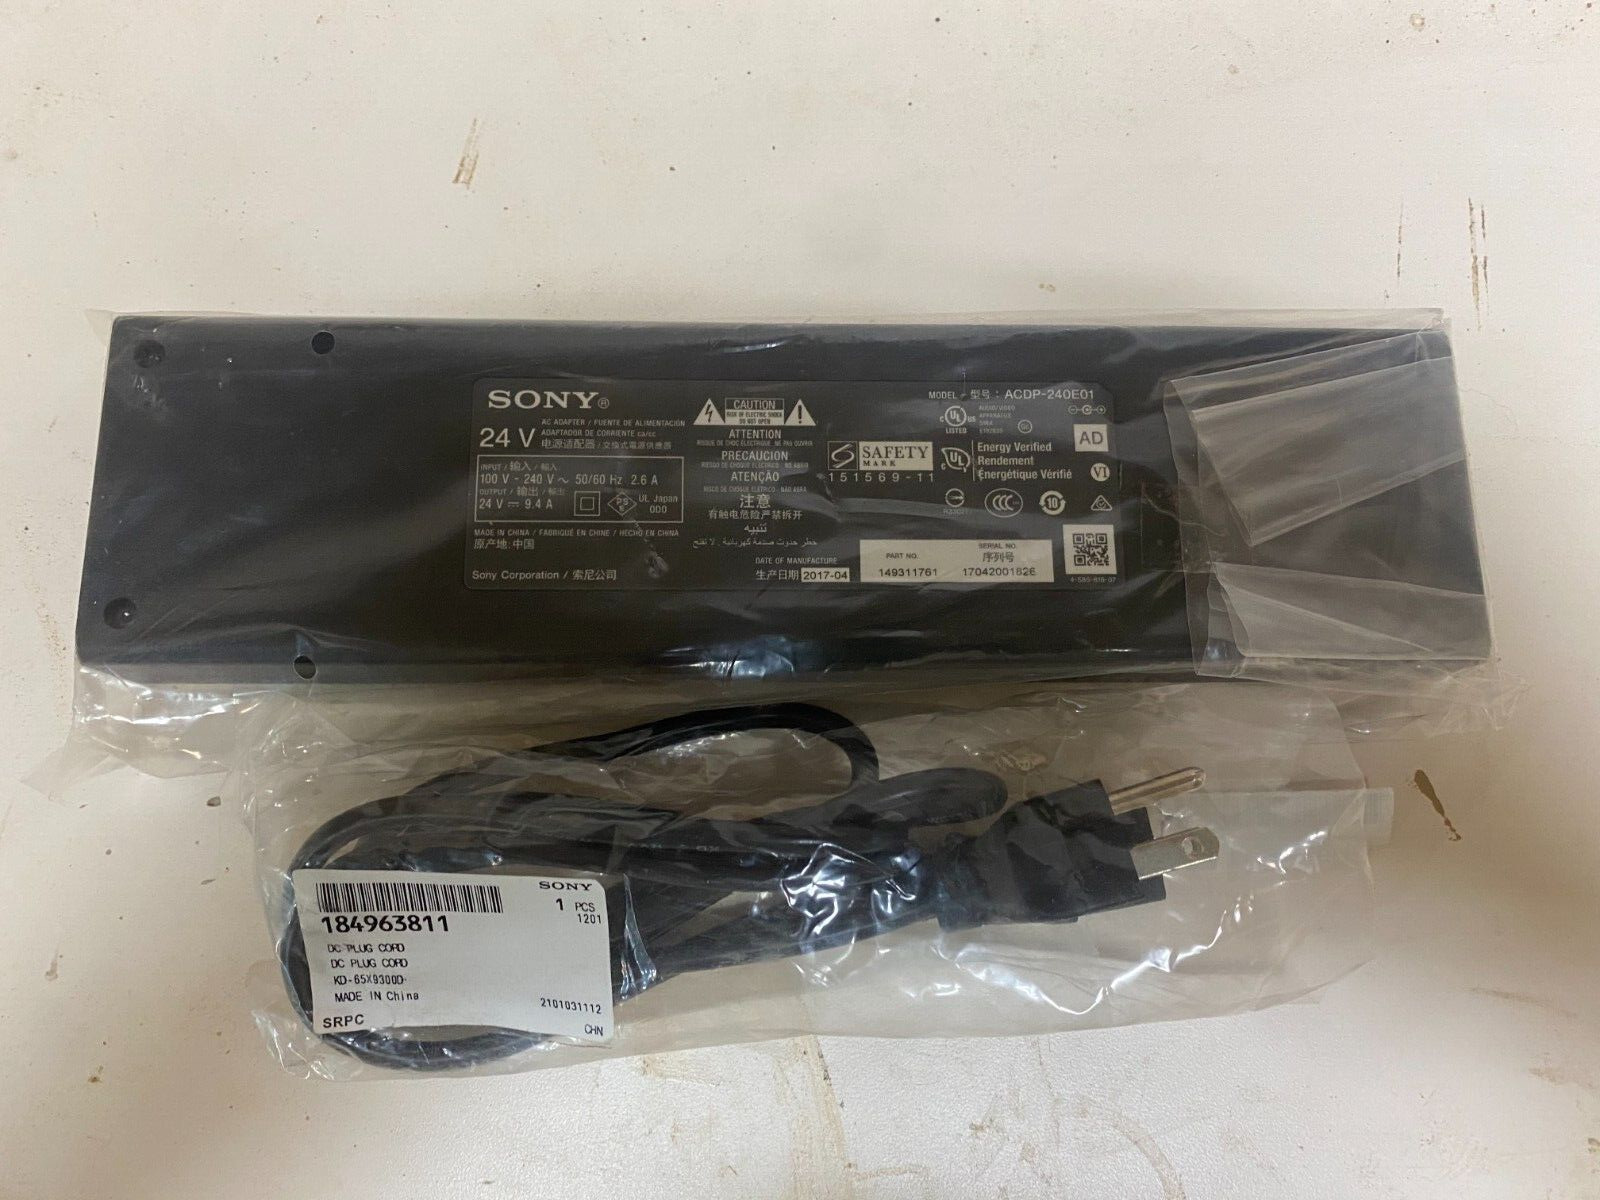 Original Sony AC Adapter 24V -- 9.4A ACDP-240E01- Part # 149311761